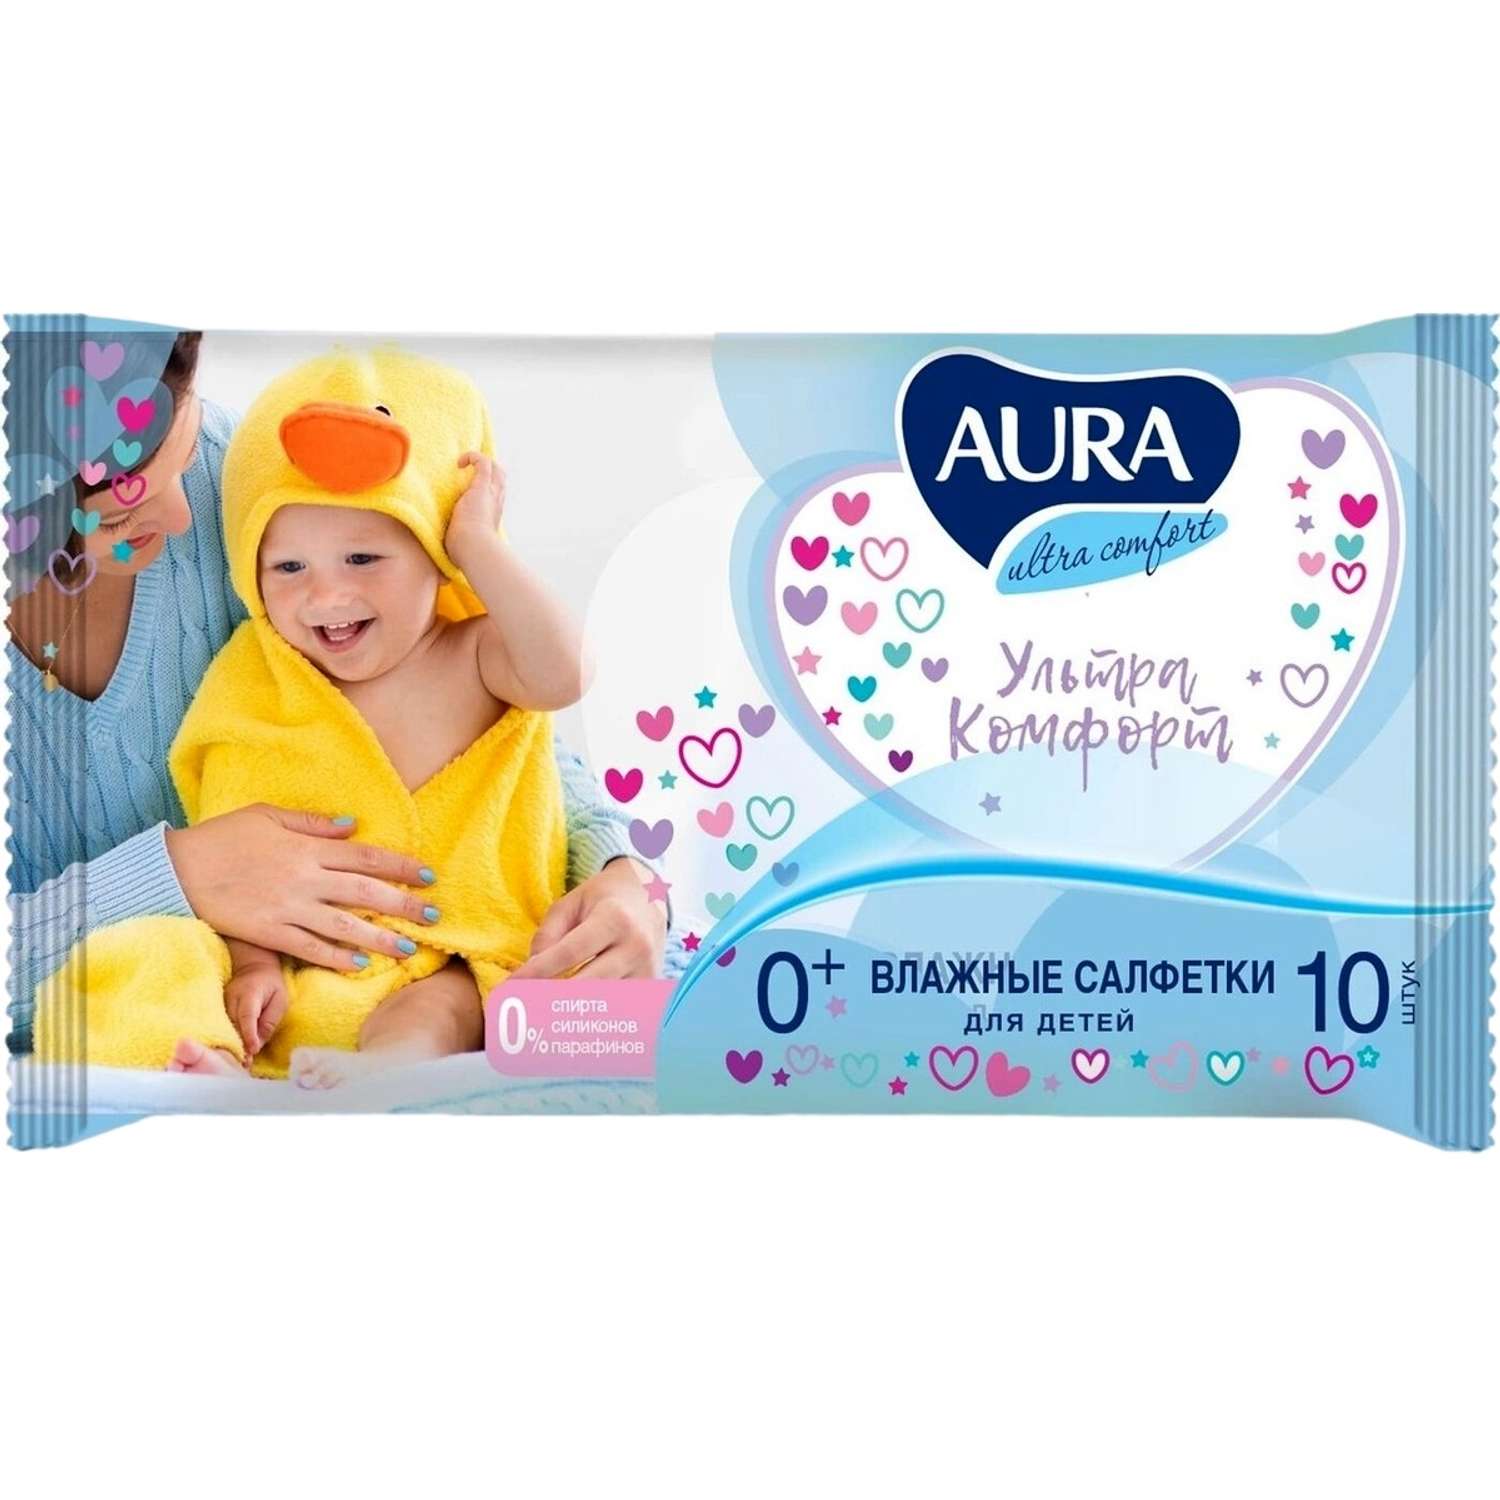 Влажные салфетки AURA Ultra comfort для детей 10шт - фото 1